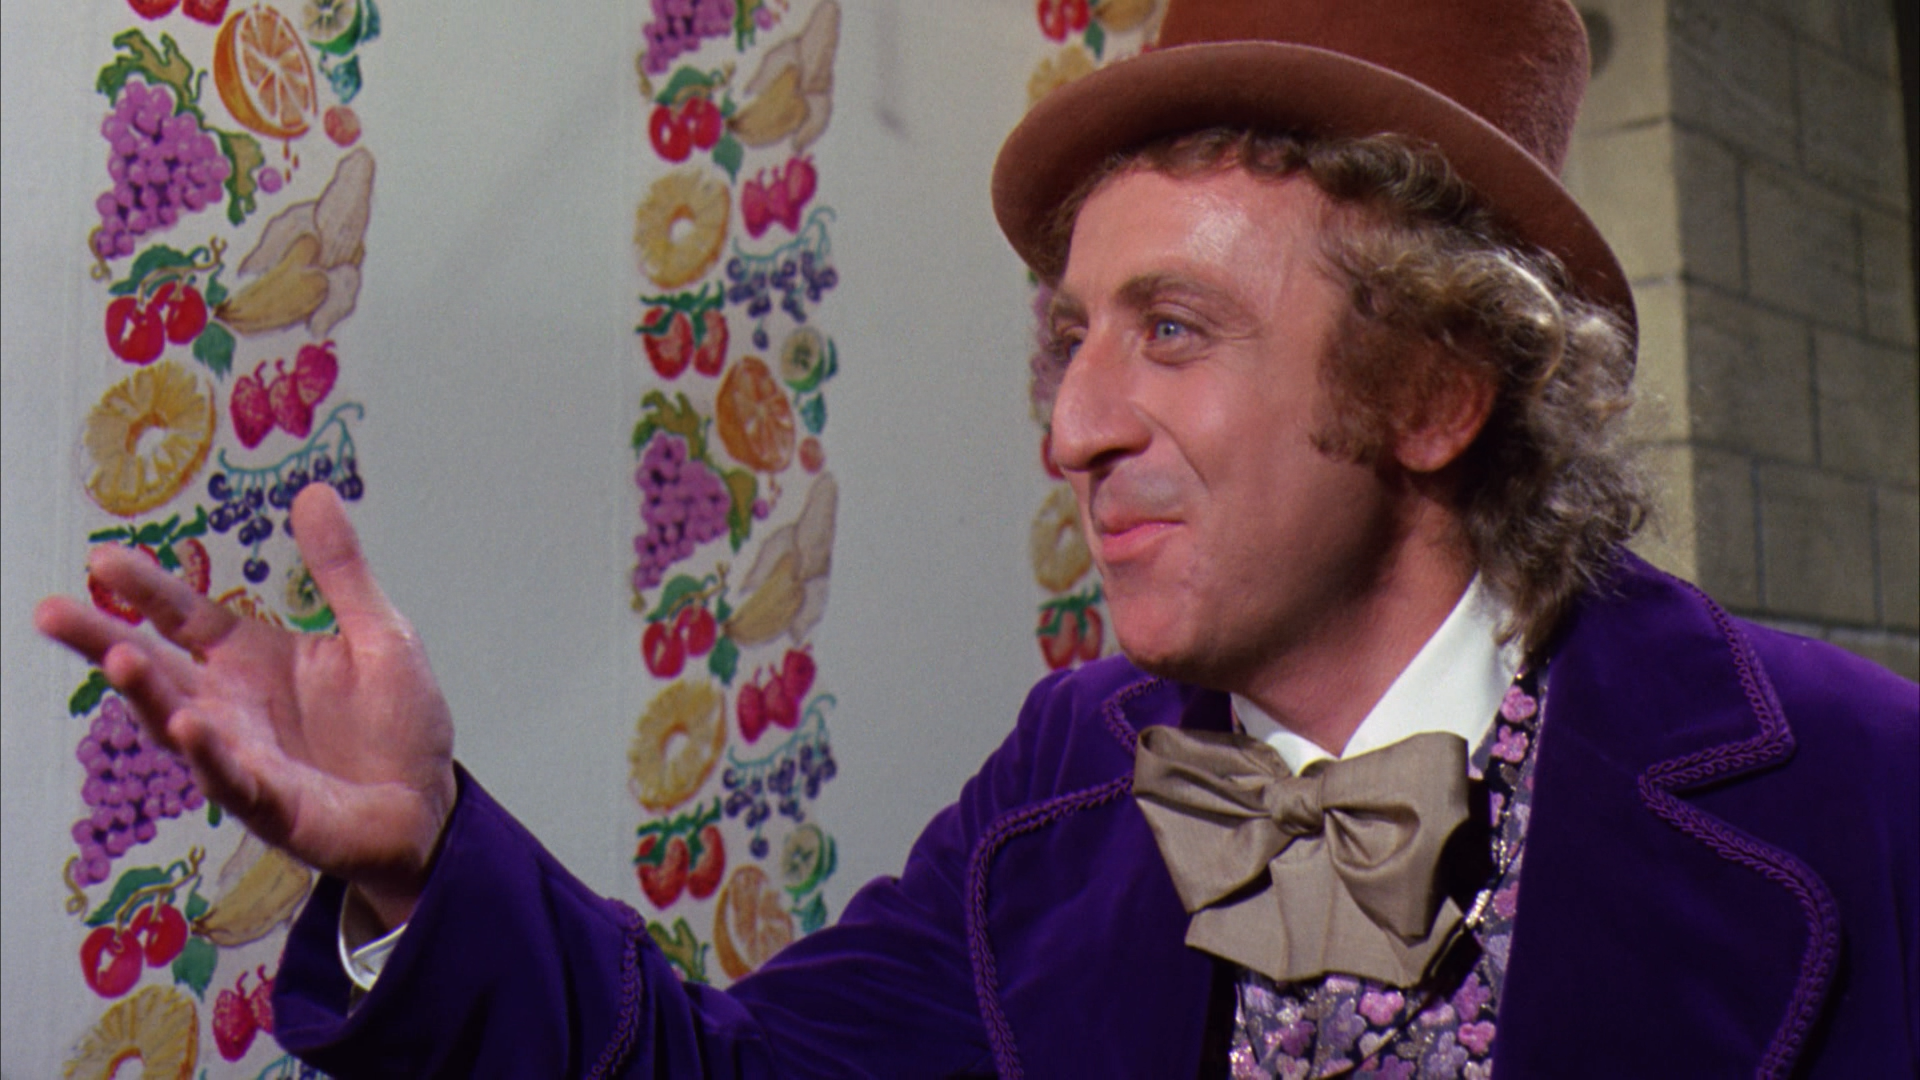 Willy Wonka: diferencias y similitudes entre los personajes de